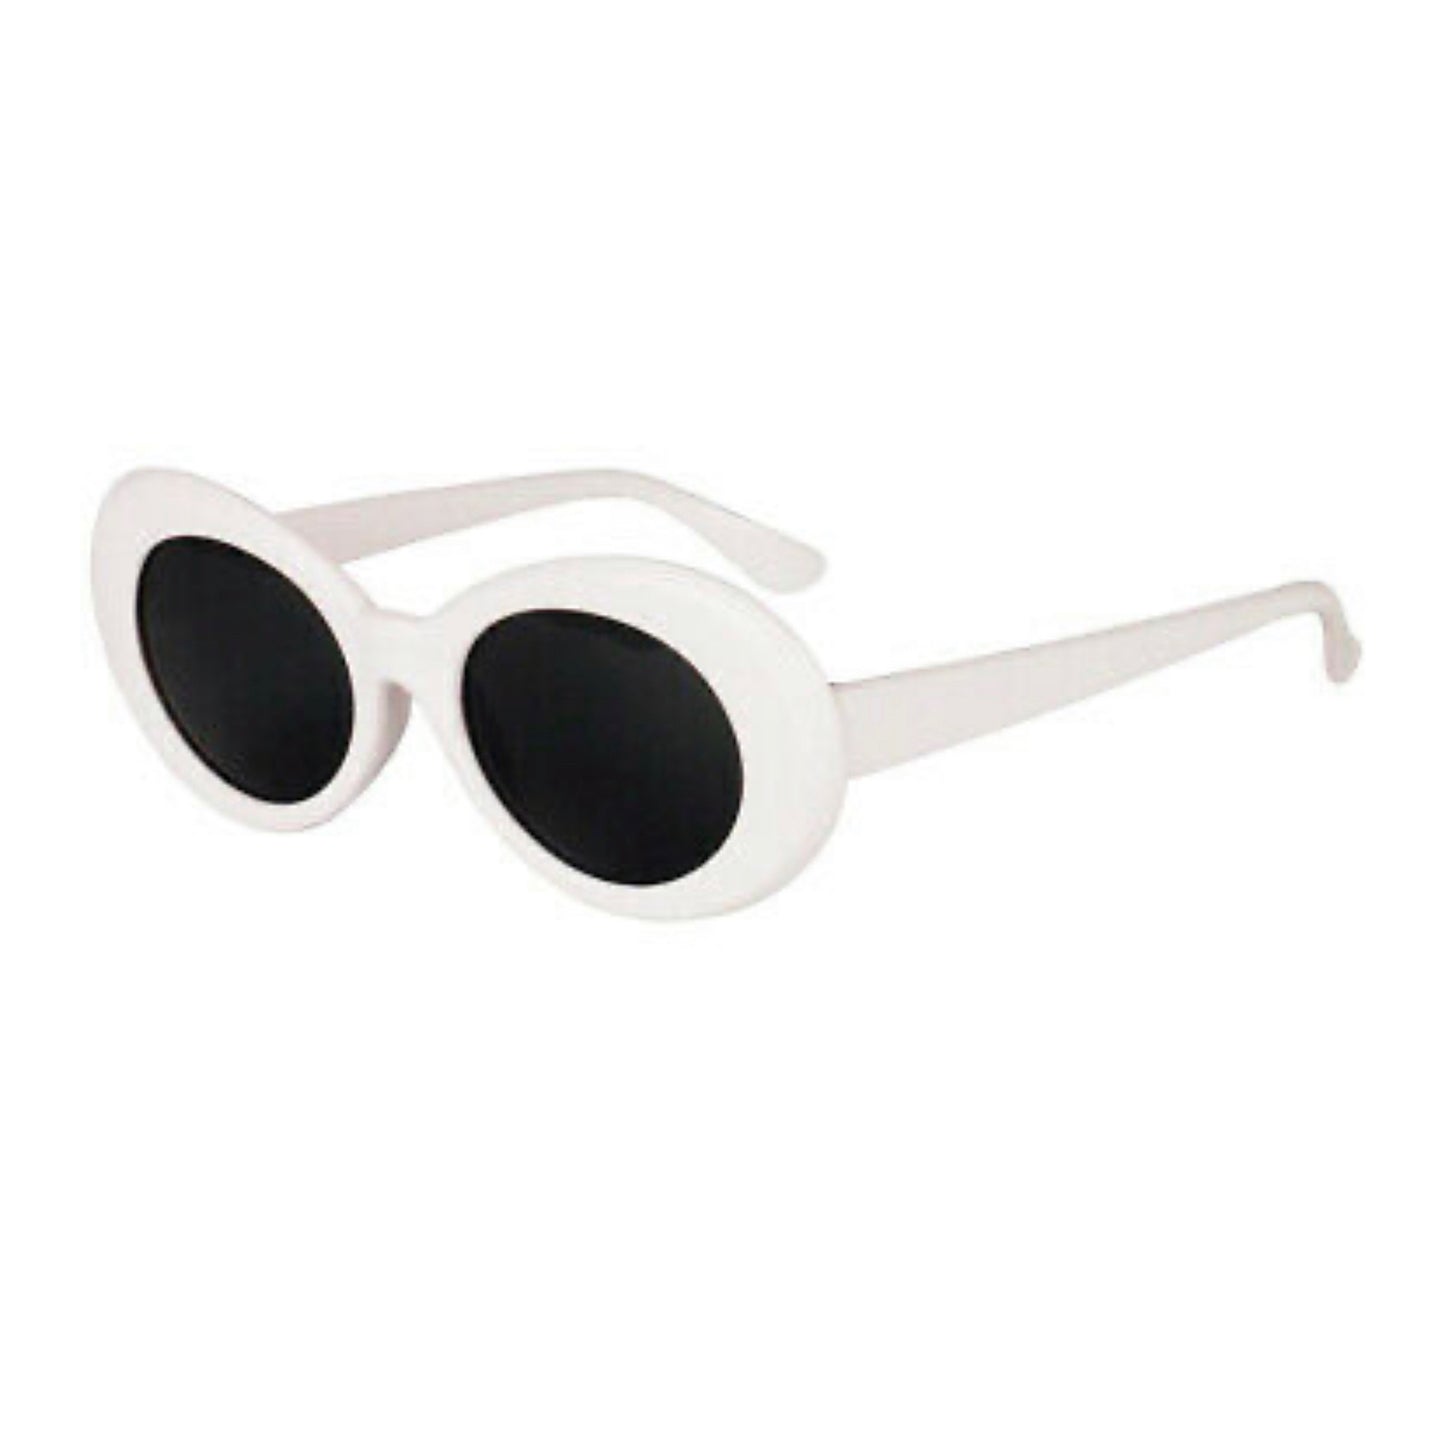 Retro Clout Goggles Sunglasses